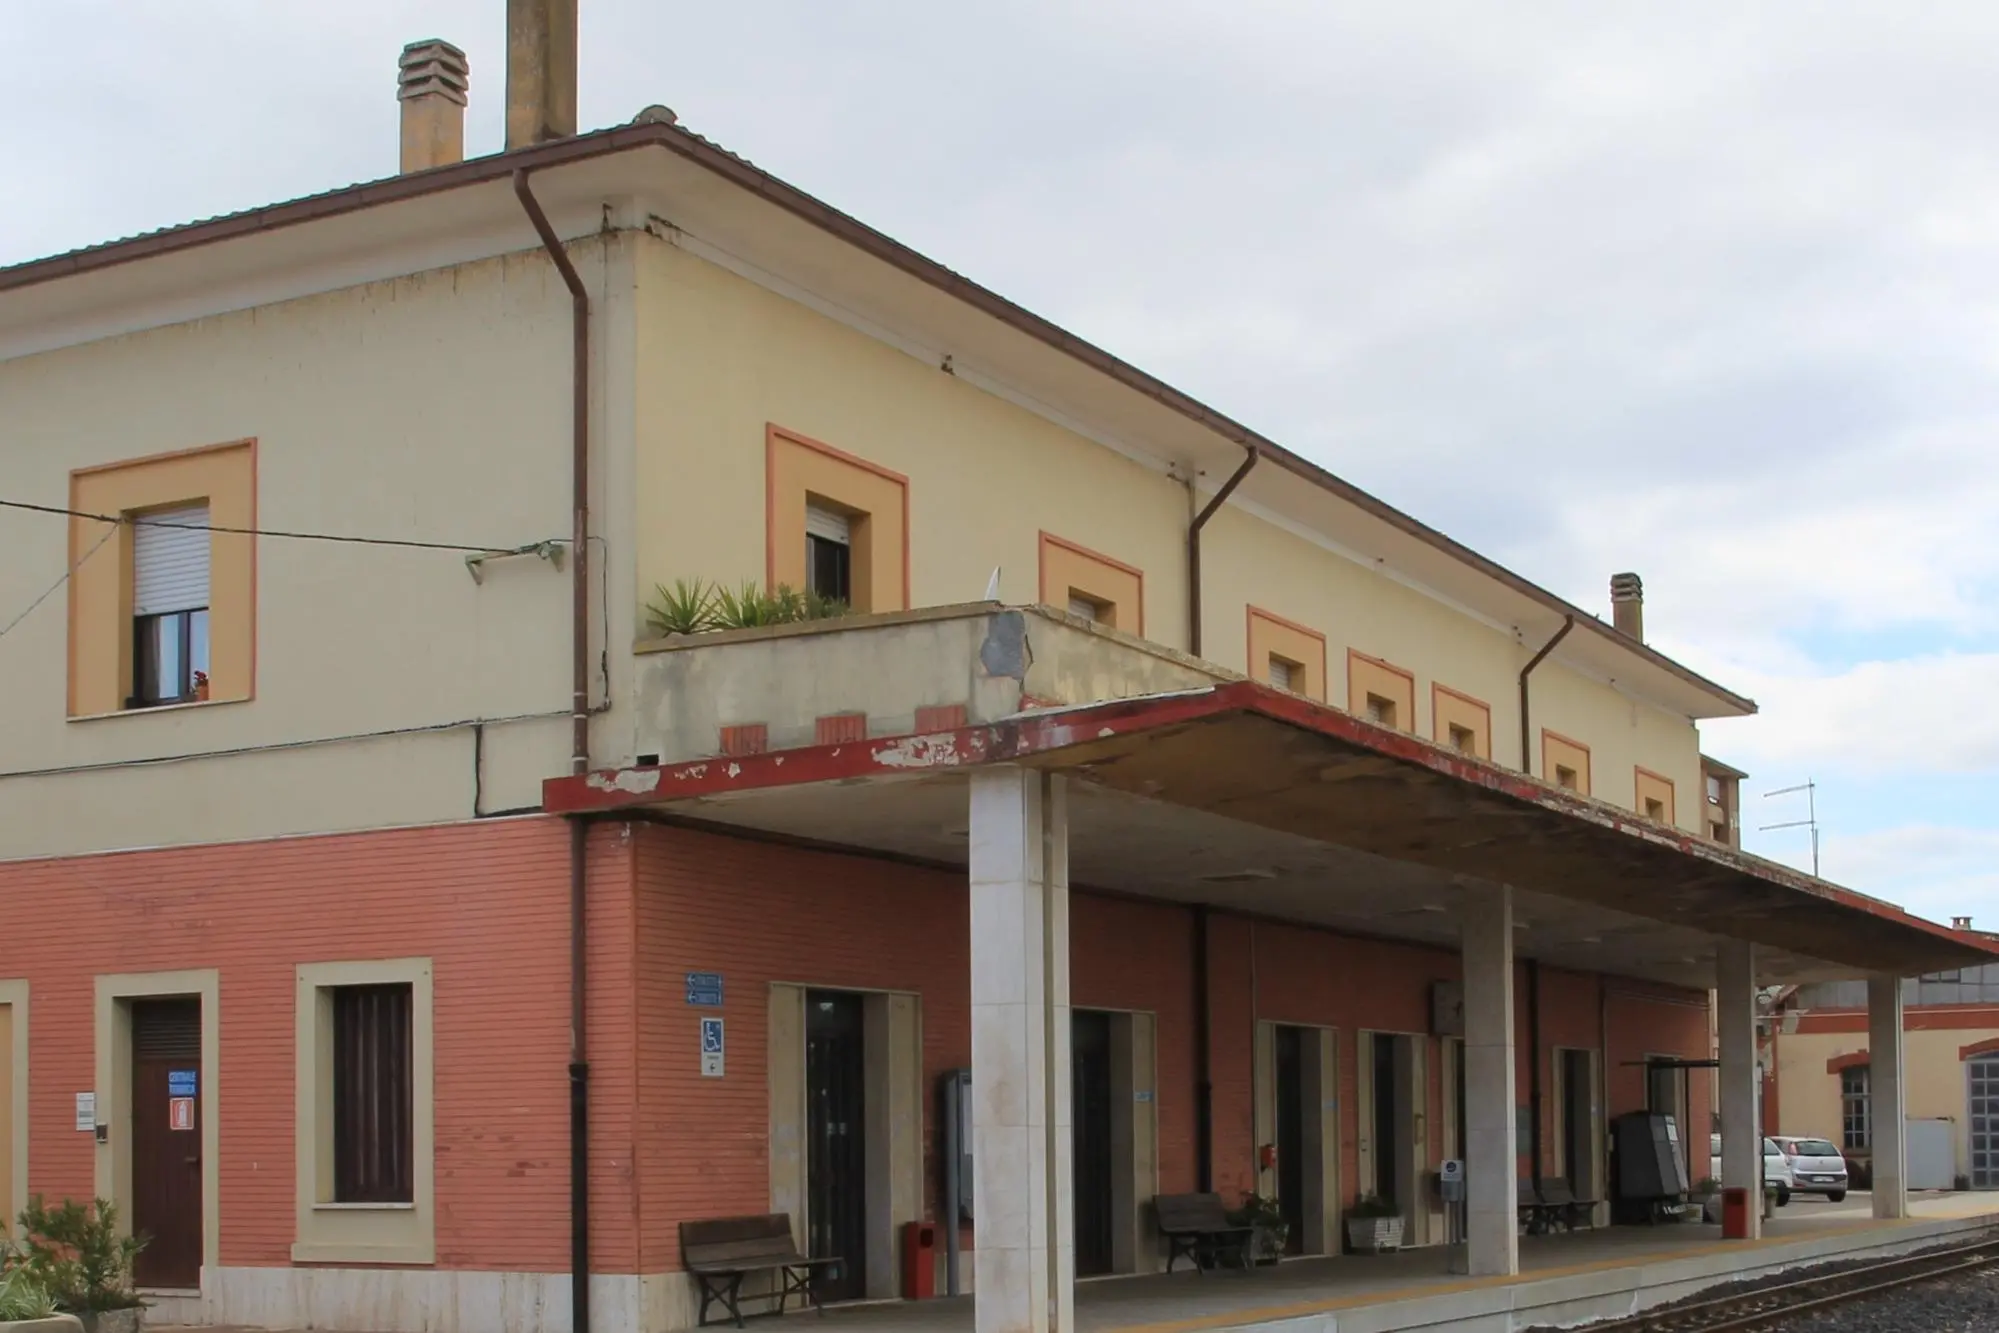 La stazione ferroviaria di Macomer (foto Oggianu)